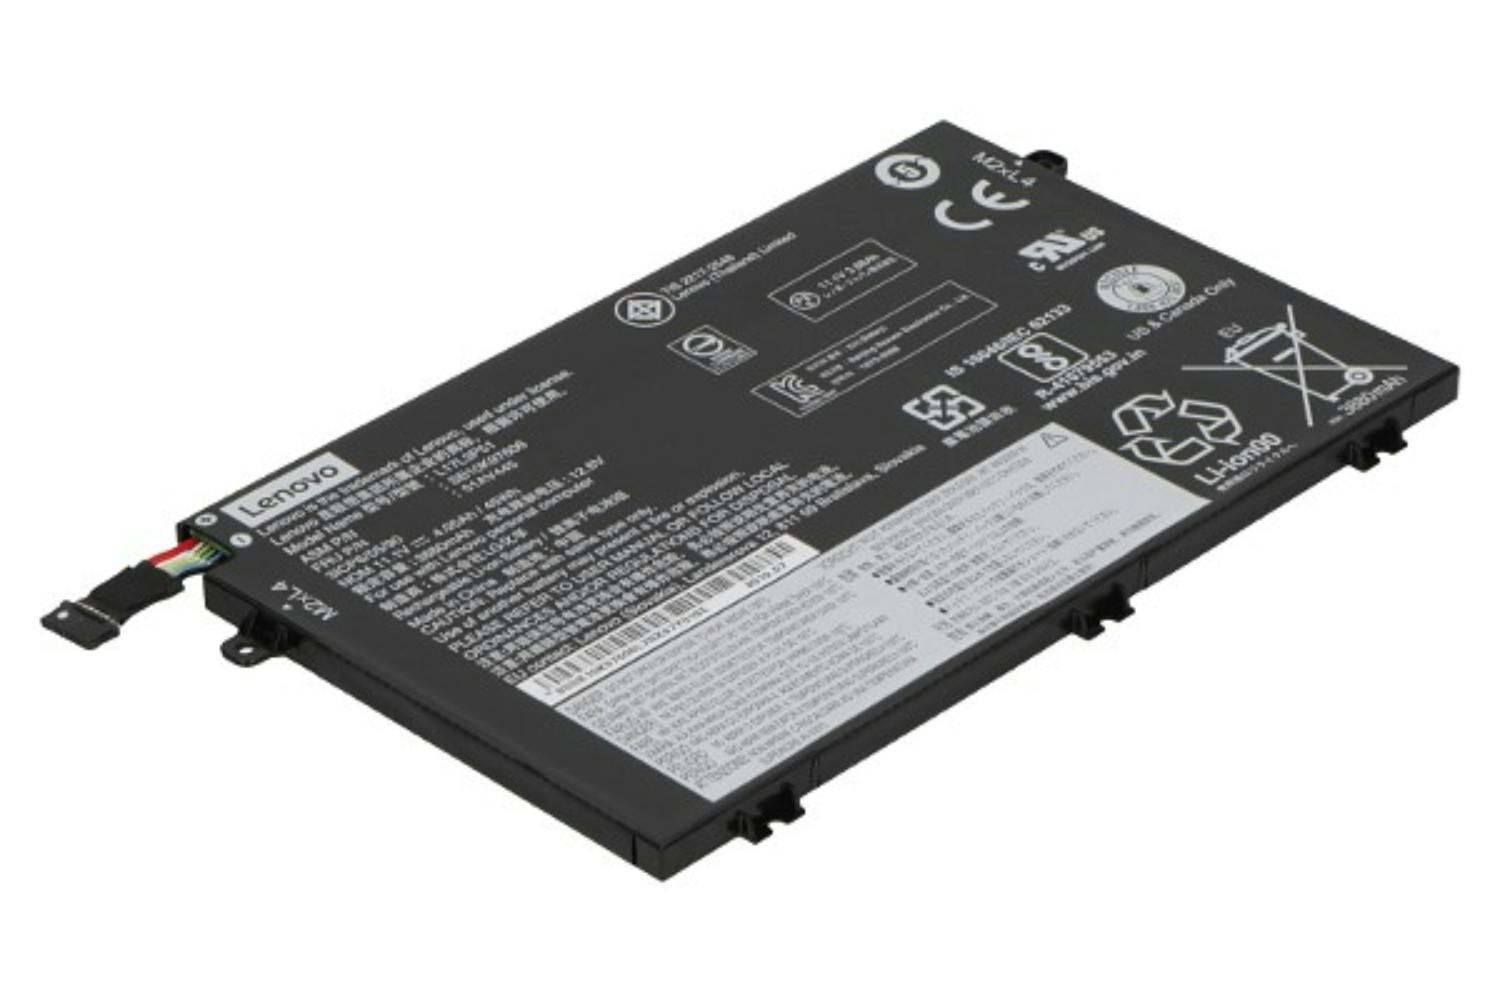 Lenovo 01AV445 4050mAh Main Battery Pack